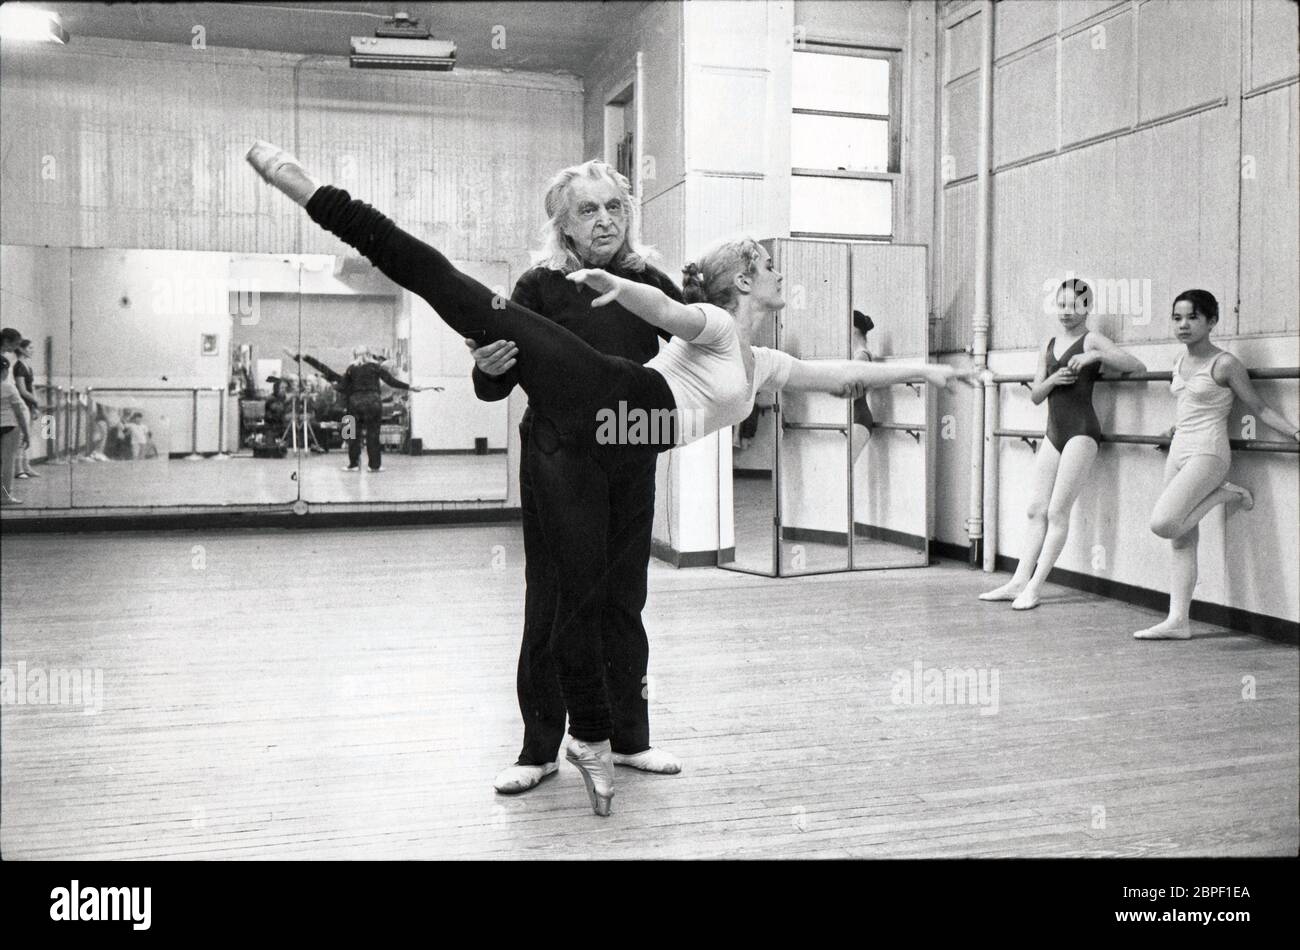 Ex ballerino, coreografo e insegnante Maestro Vincenzo Celli insegnò una lezione nel centro di Manhattan nel 1980. Foto Stock